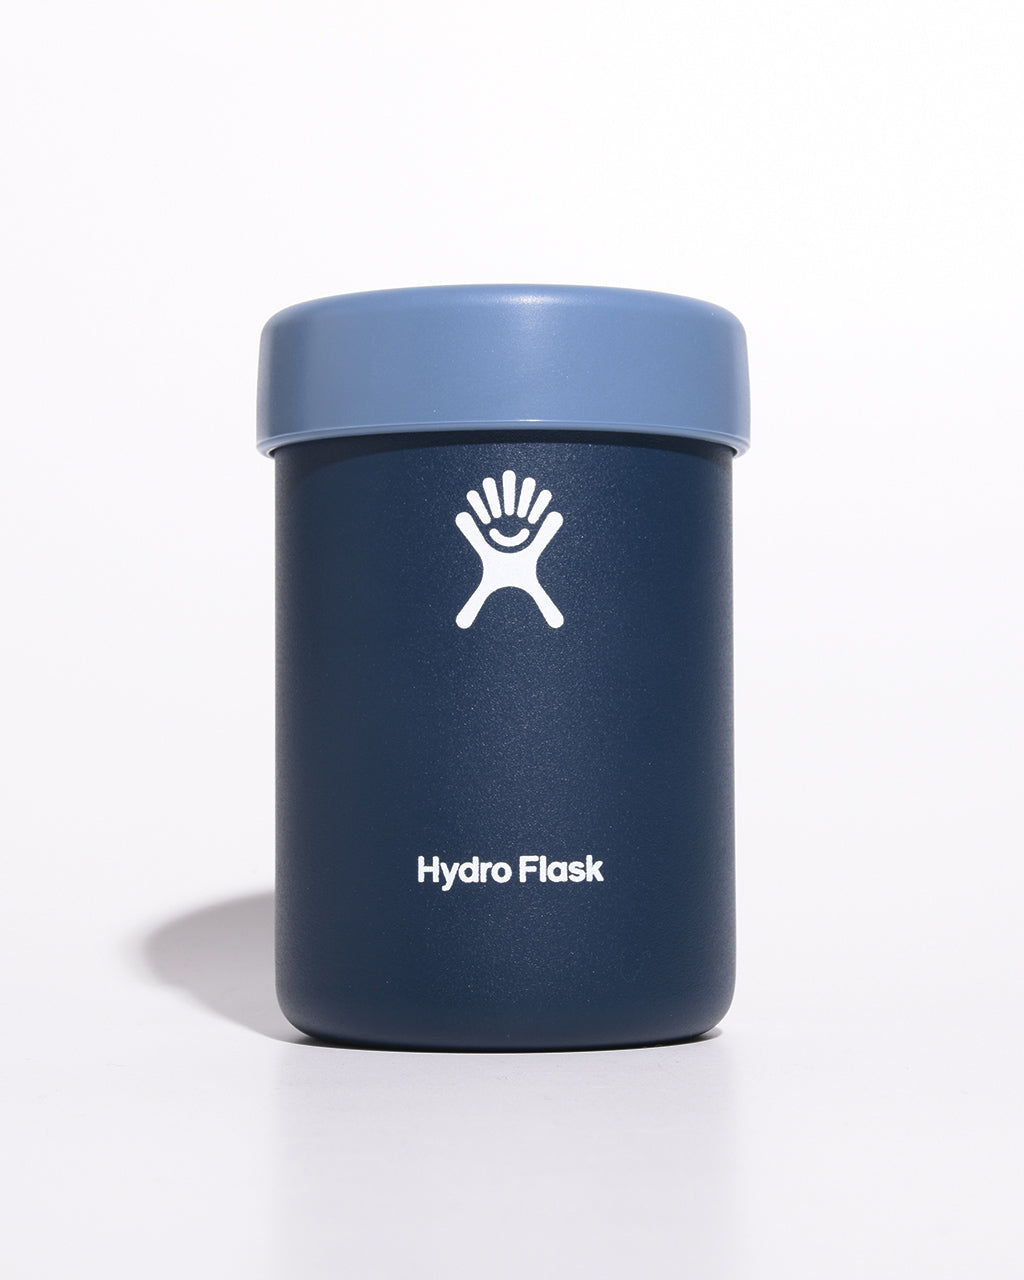 Hydro Flask ハイドロフラスク ビアー 12oz クーラー カップ BEER 12oz COOLER CUP